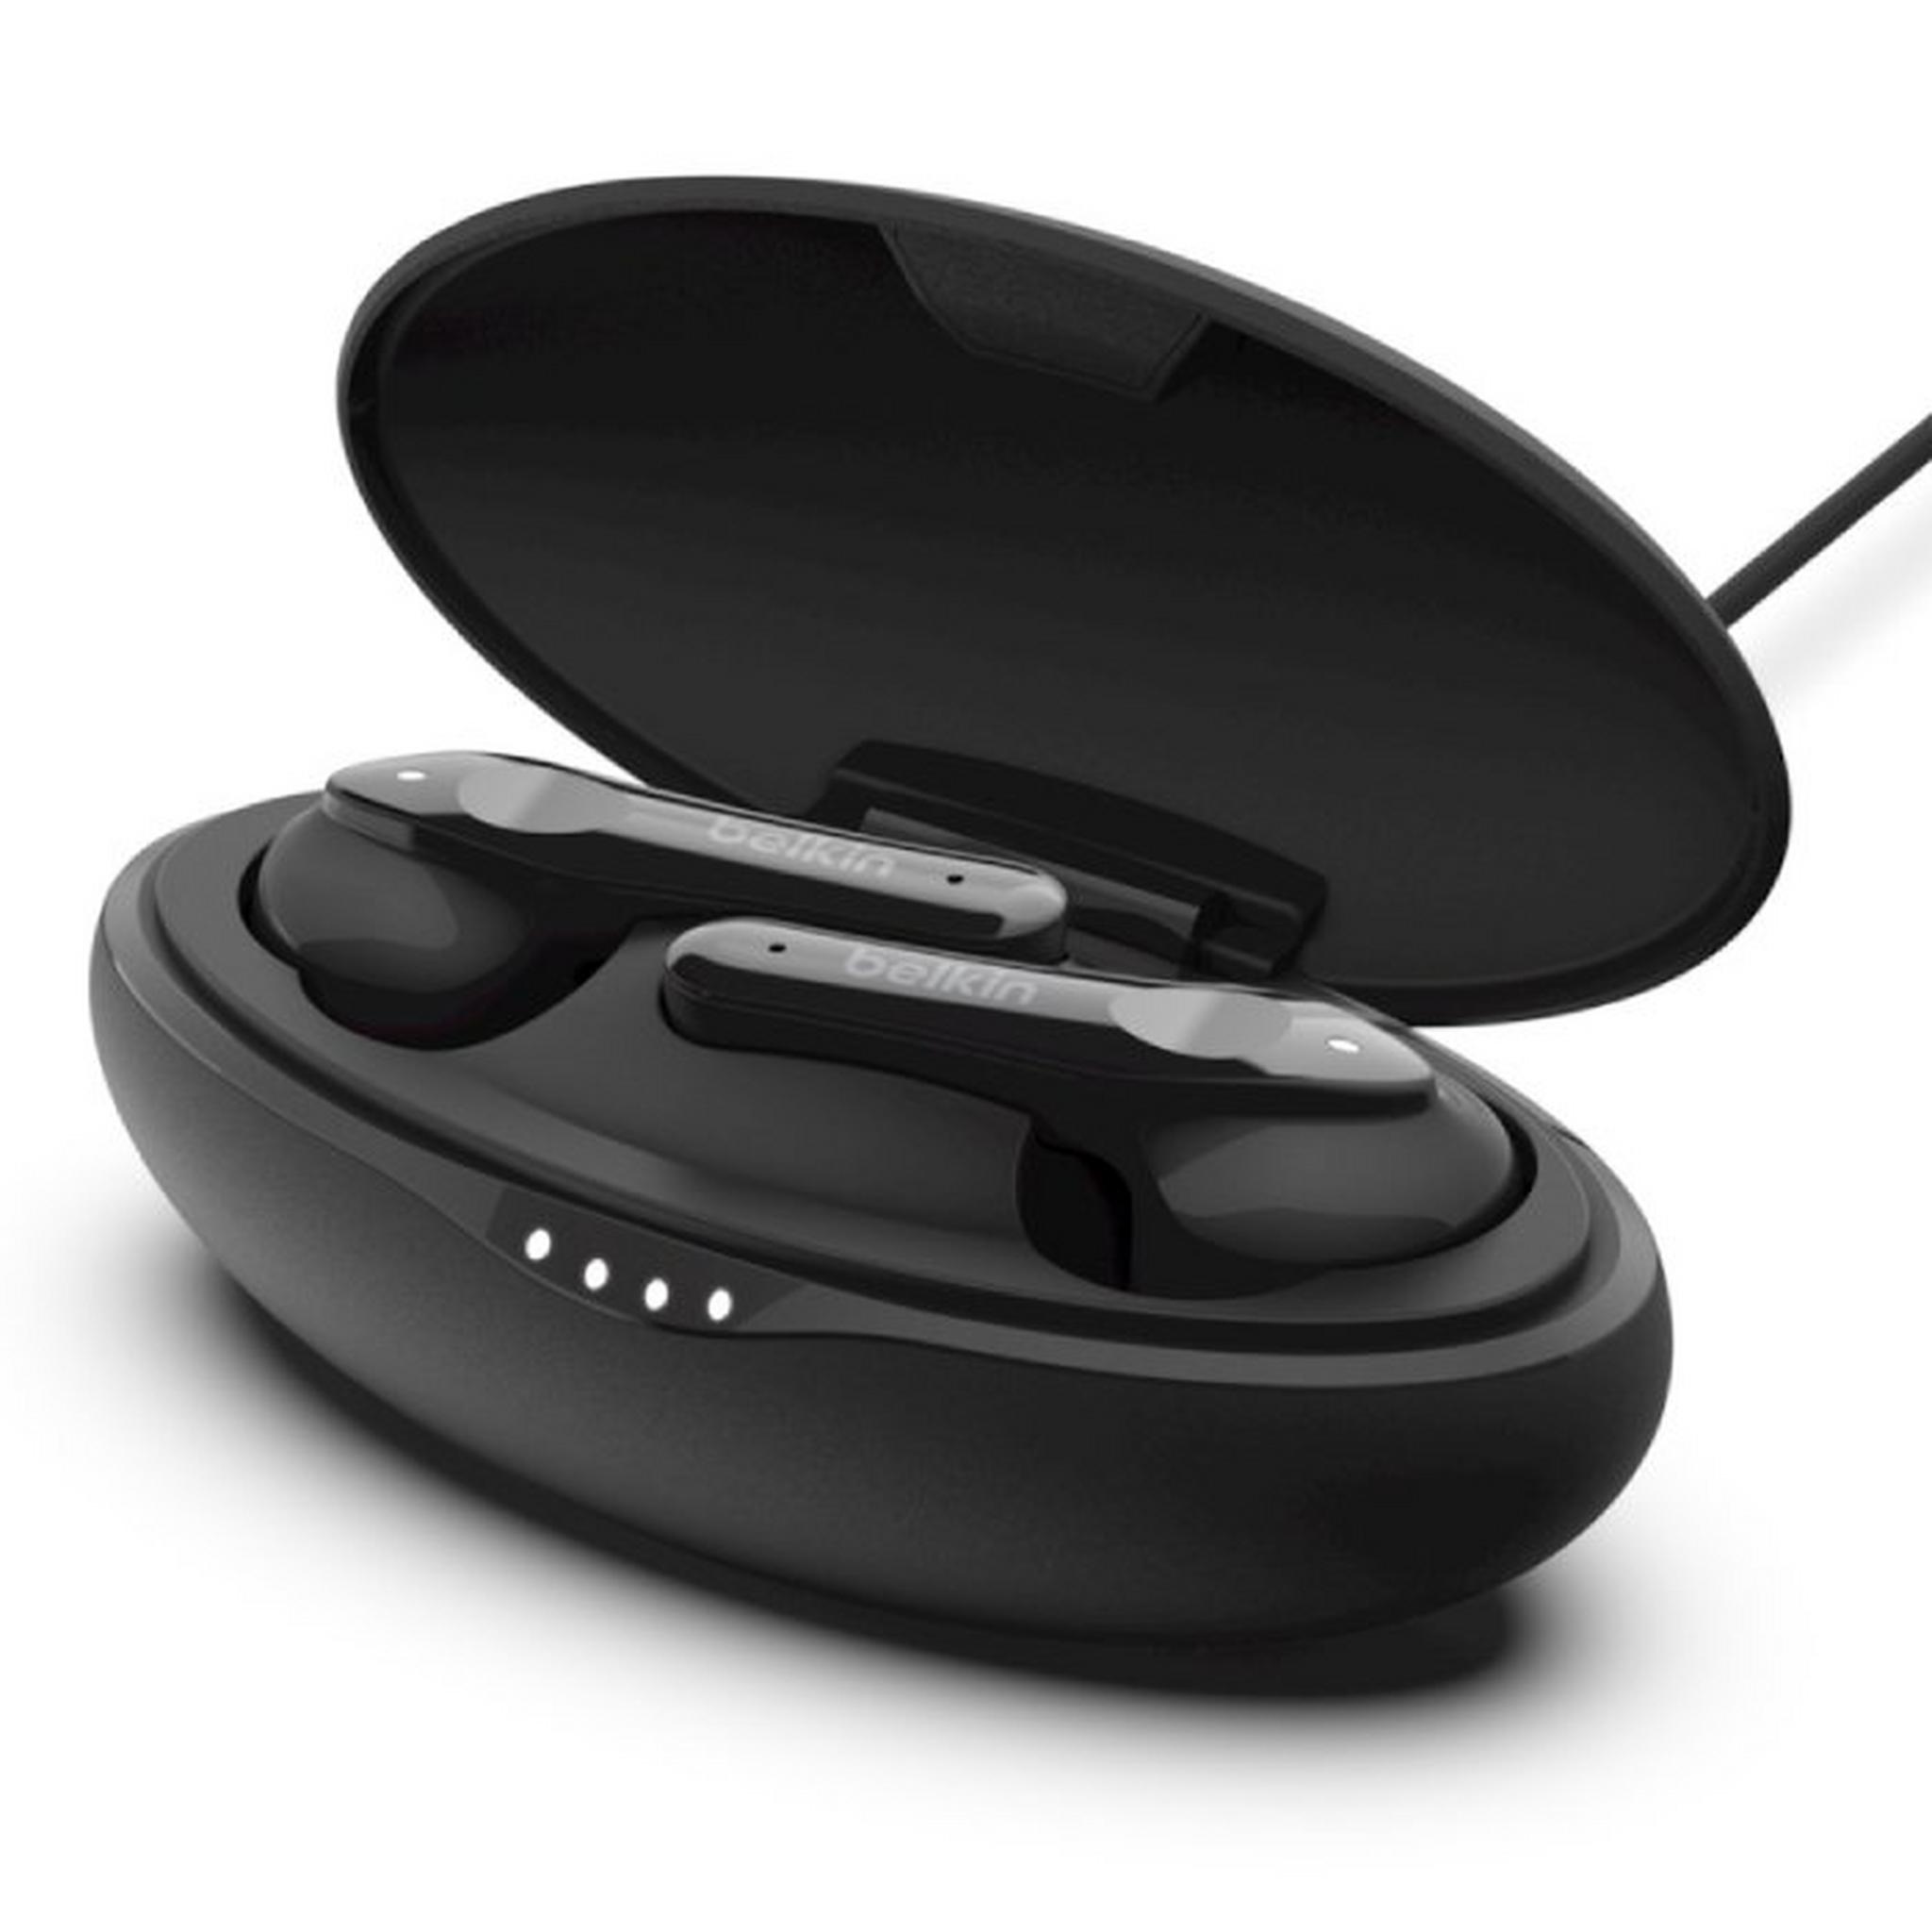 Belkin SoundForm Move Plus True Wireless Earbuds - Black